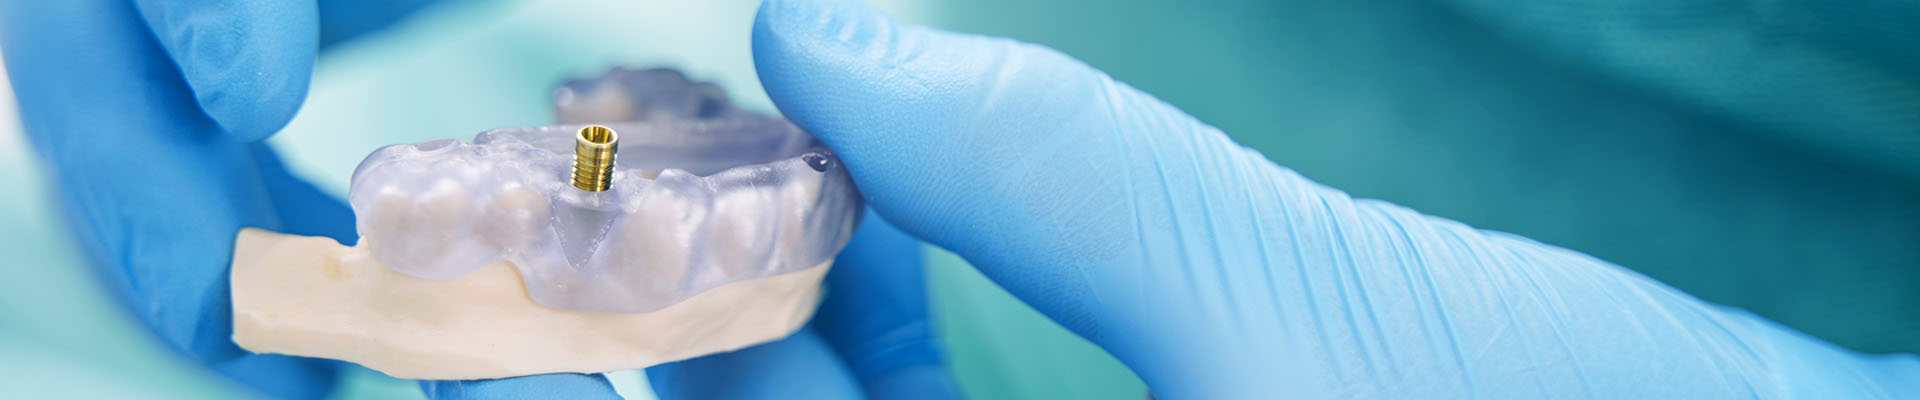 Clínica Dental Andrea Compte, tu Centro Odontológico especializado. Implantes dentales (Implantología) en Cálig. Dentista sosteniendo modelo de dientes con implante dental.